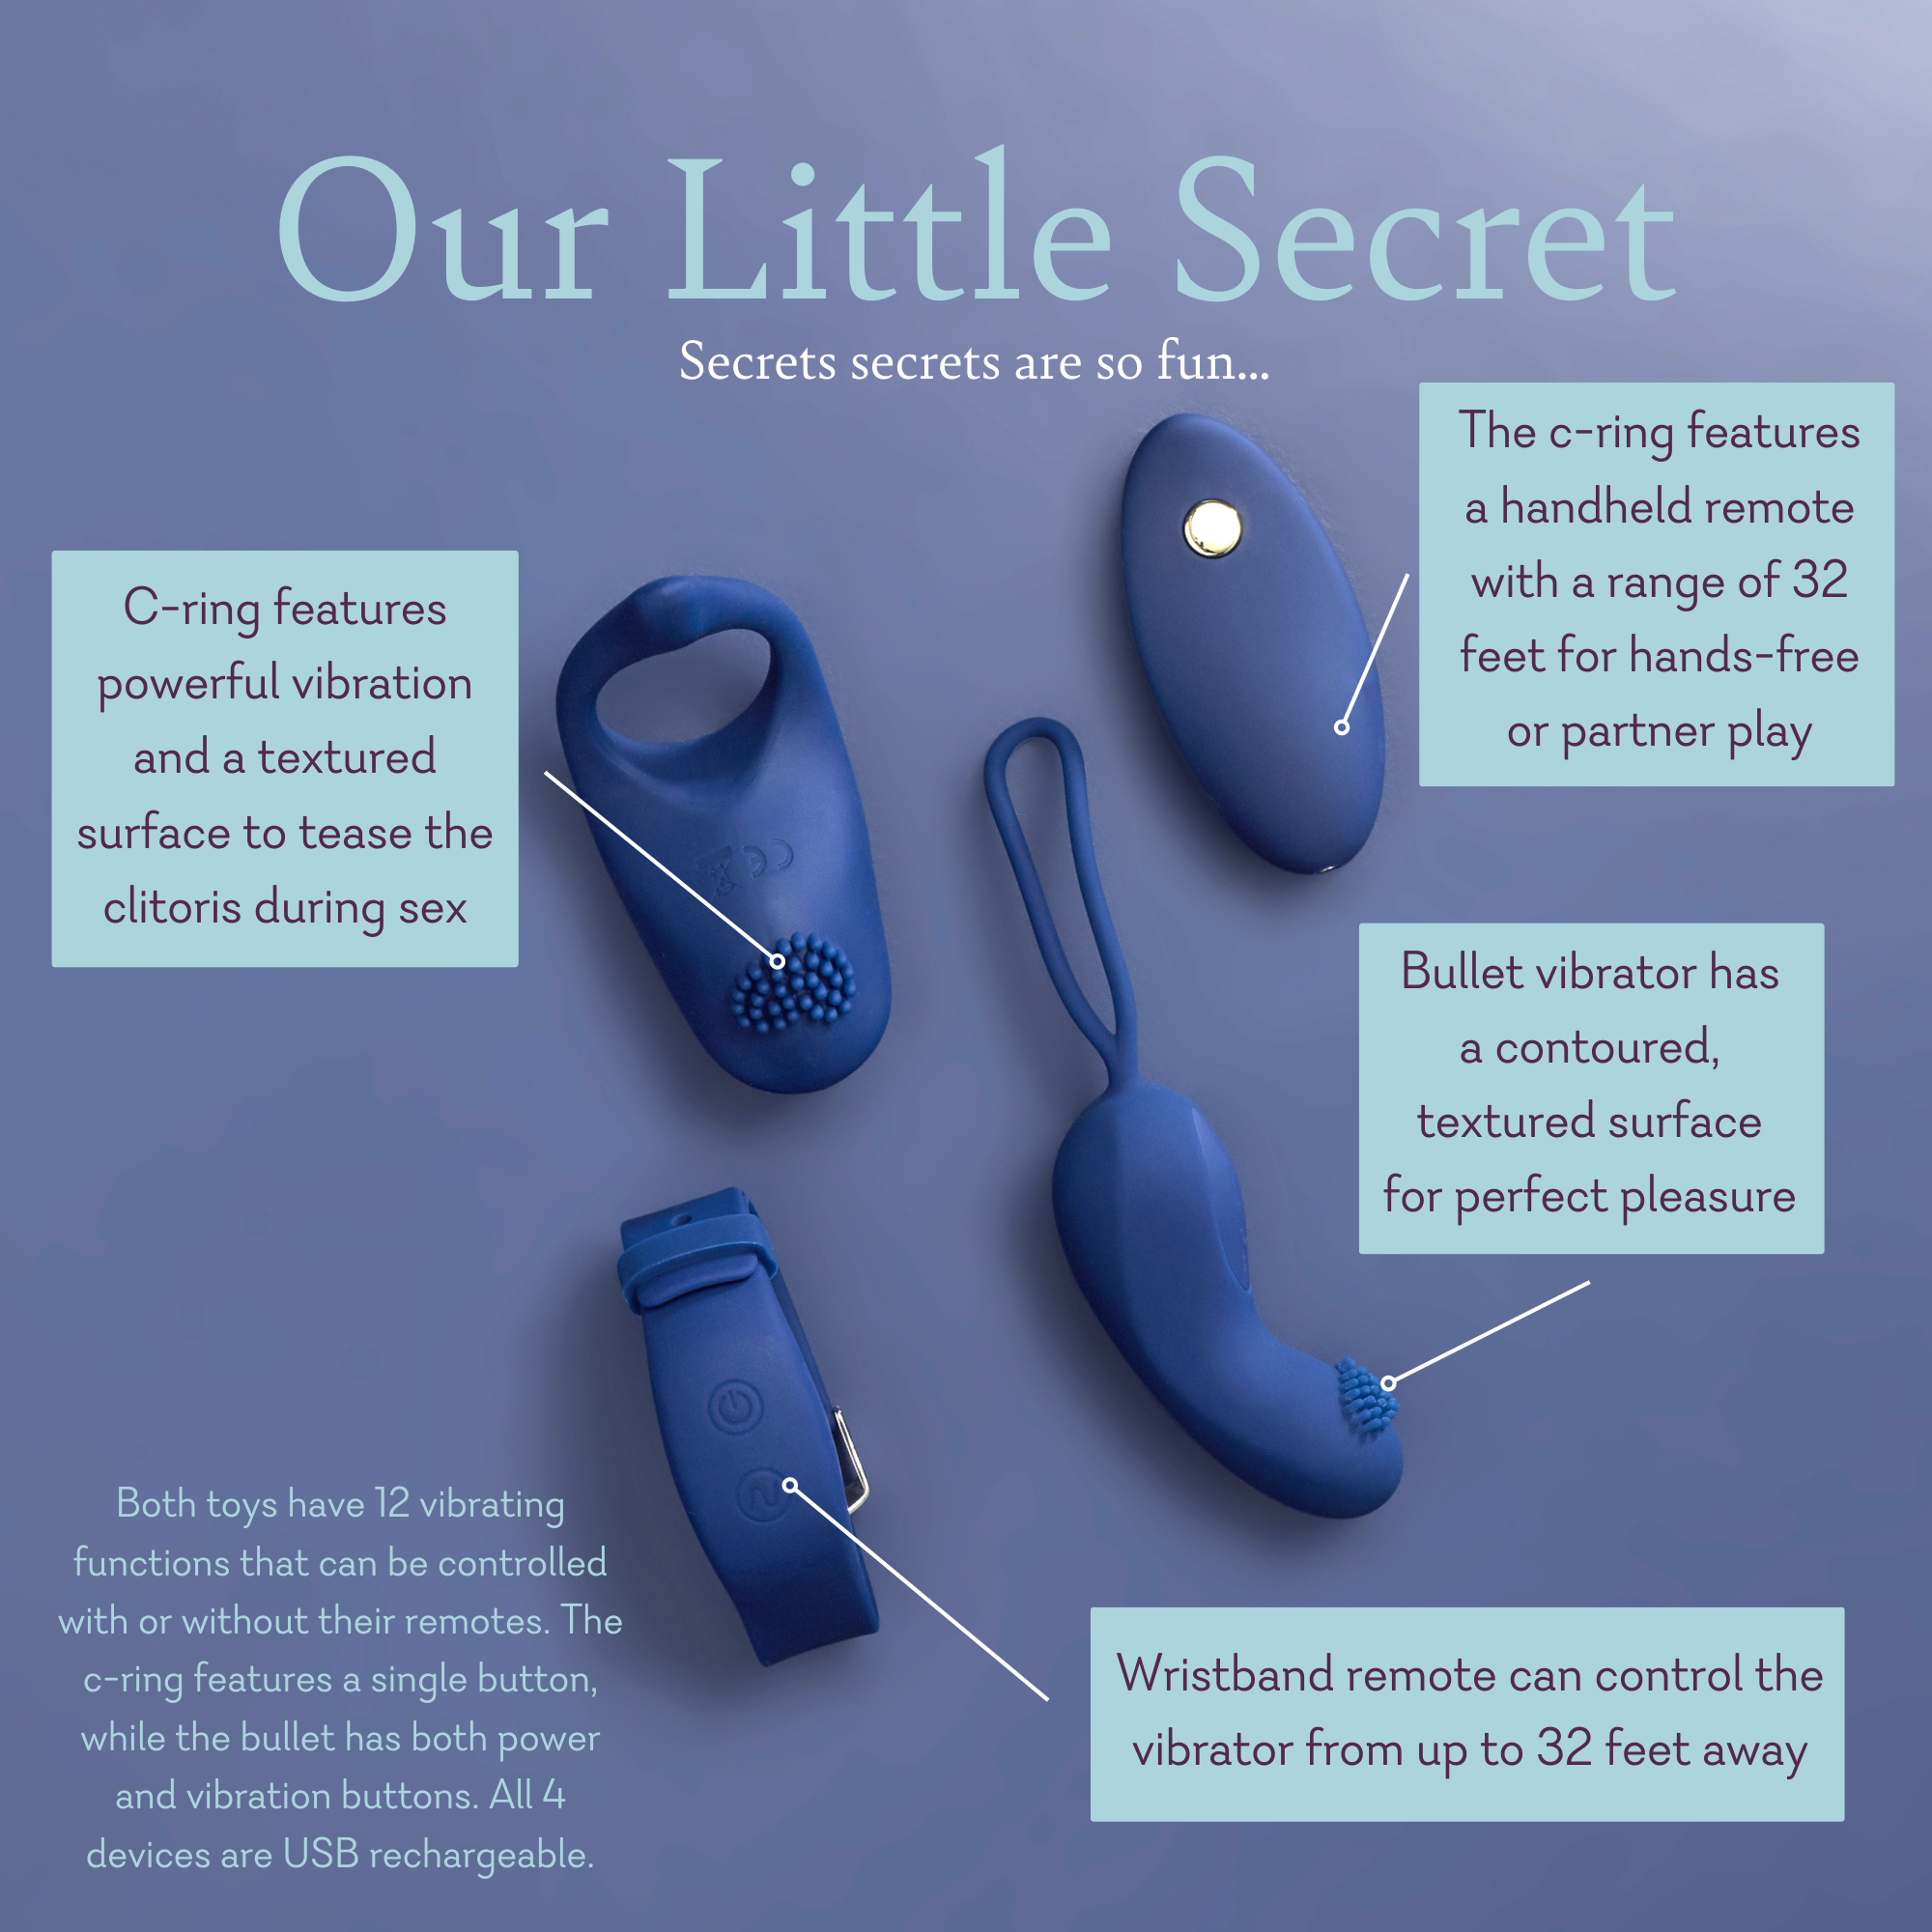 Our Little Secret – Pure Romance